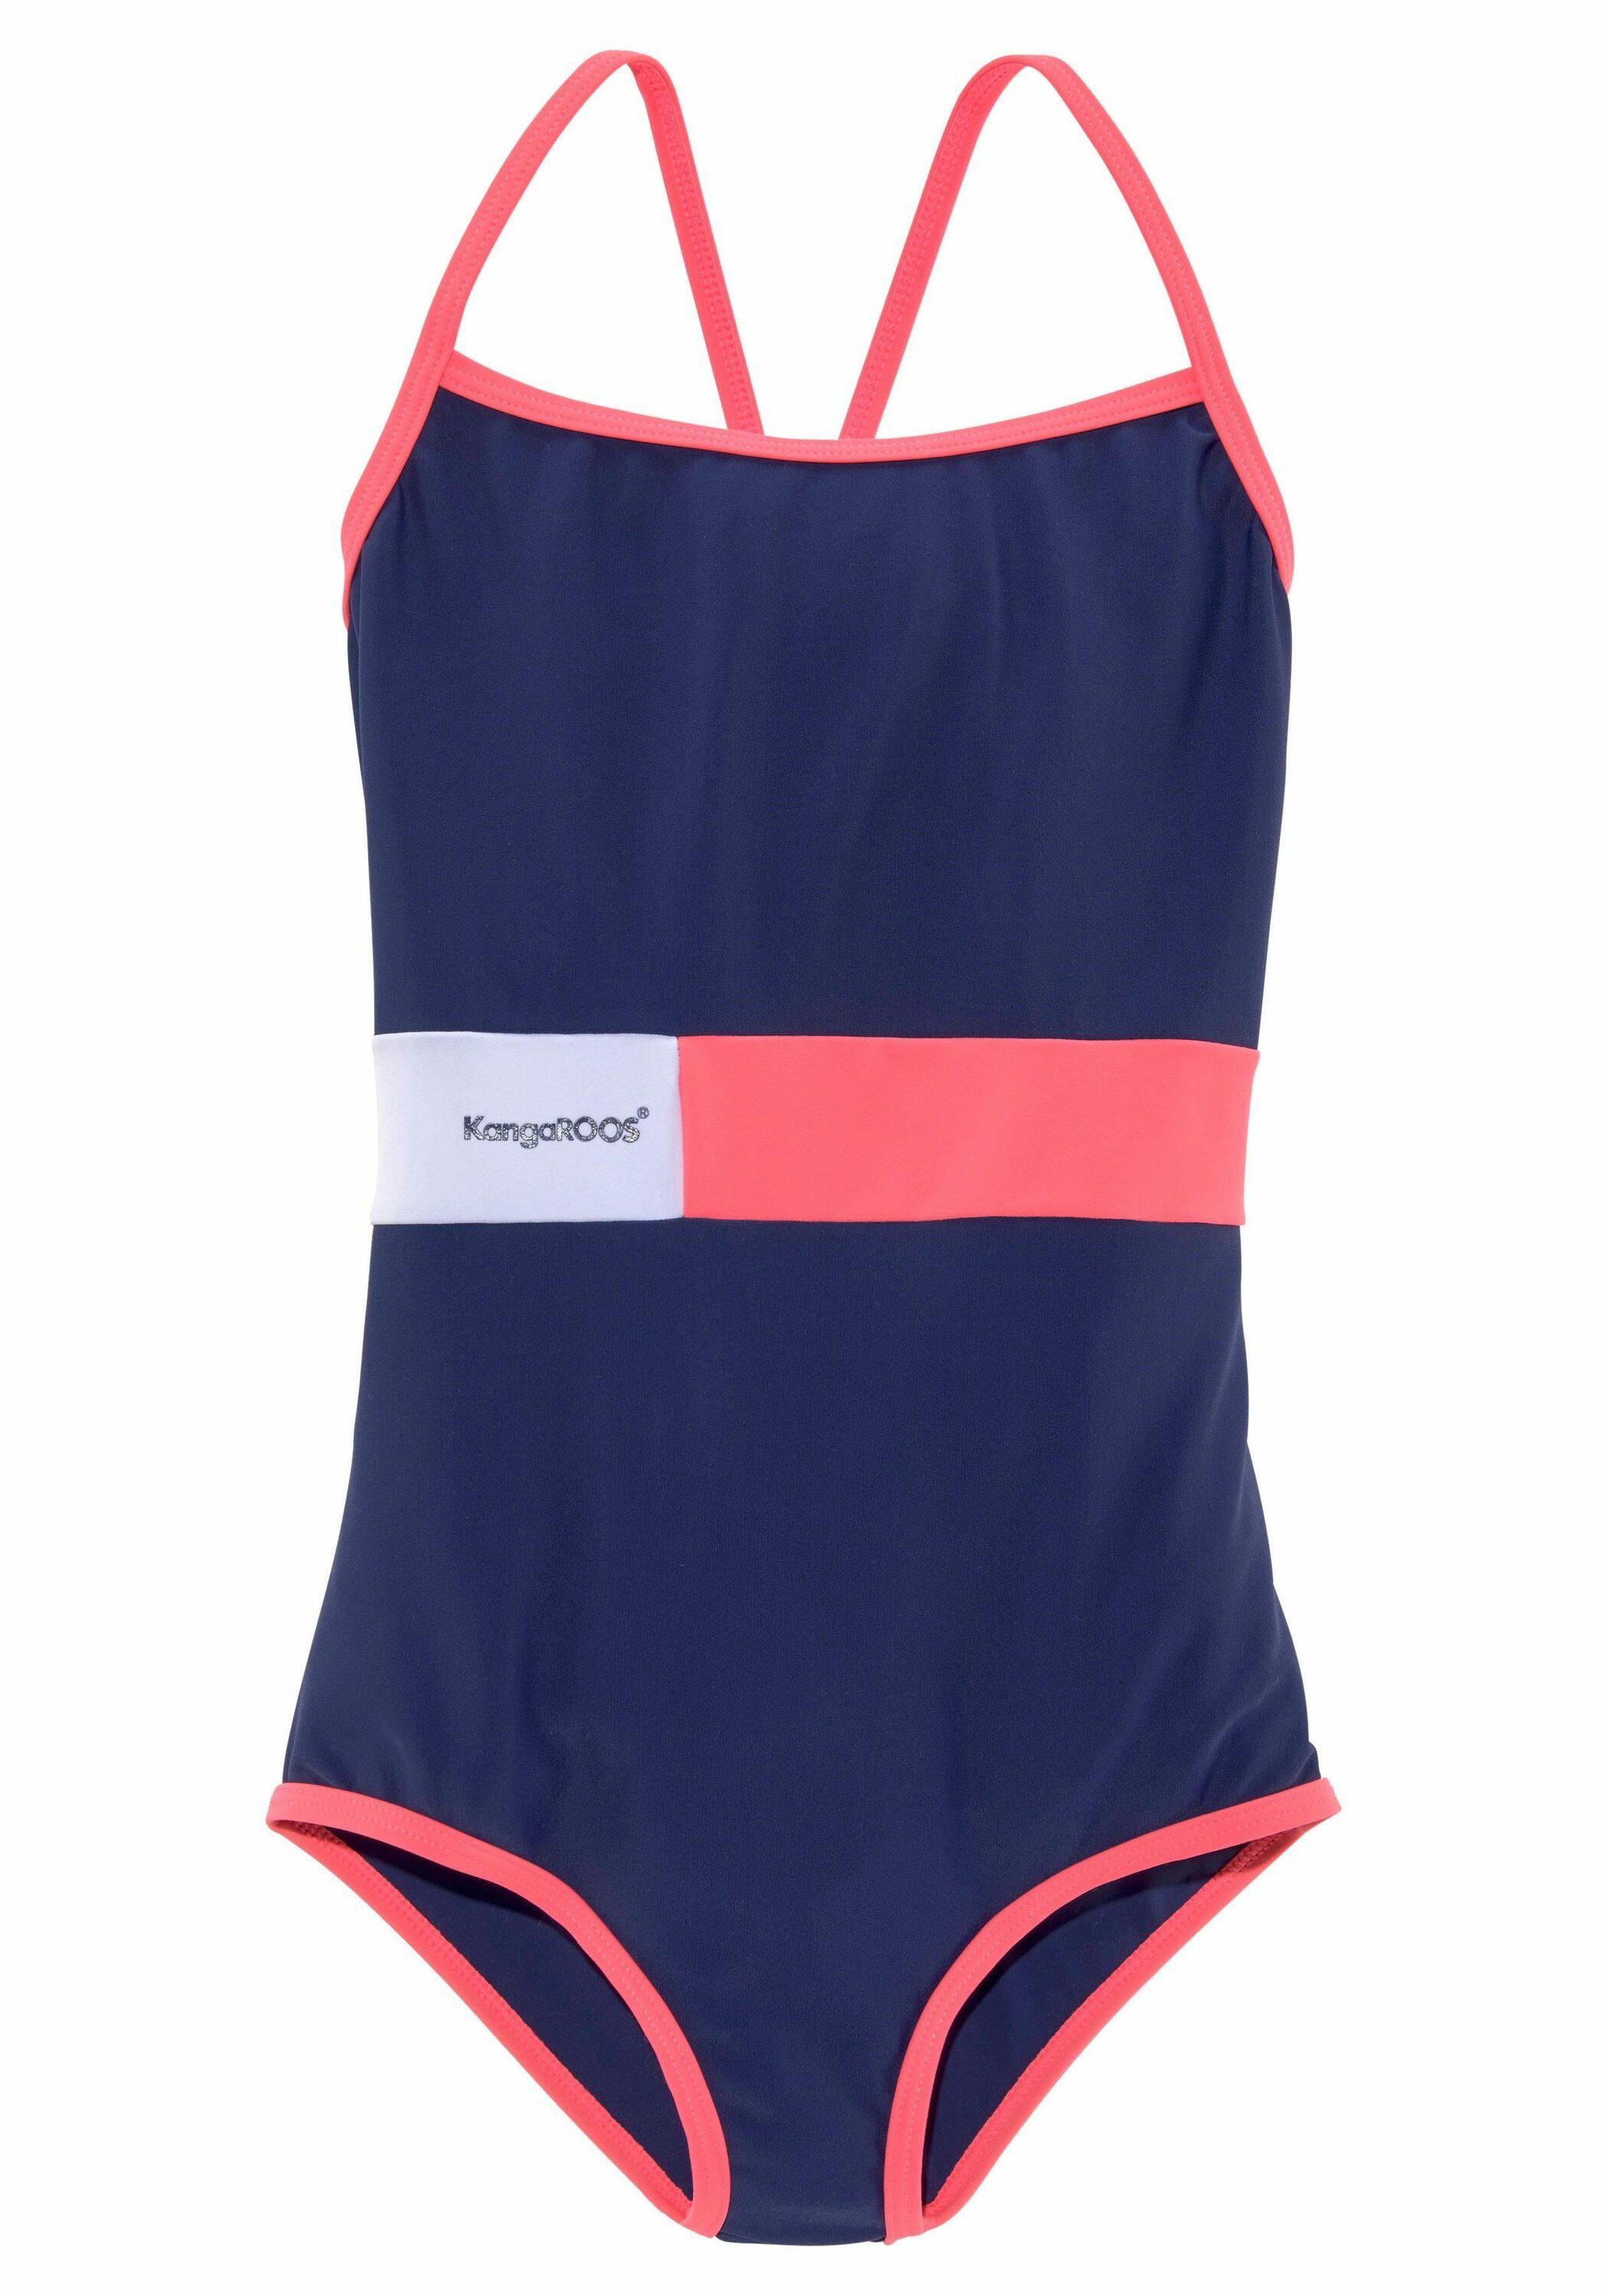 KangaROOS Badeanzug Damen marine-pink-weiß im Online kaufen Shop SportScheck von